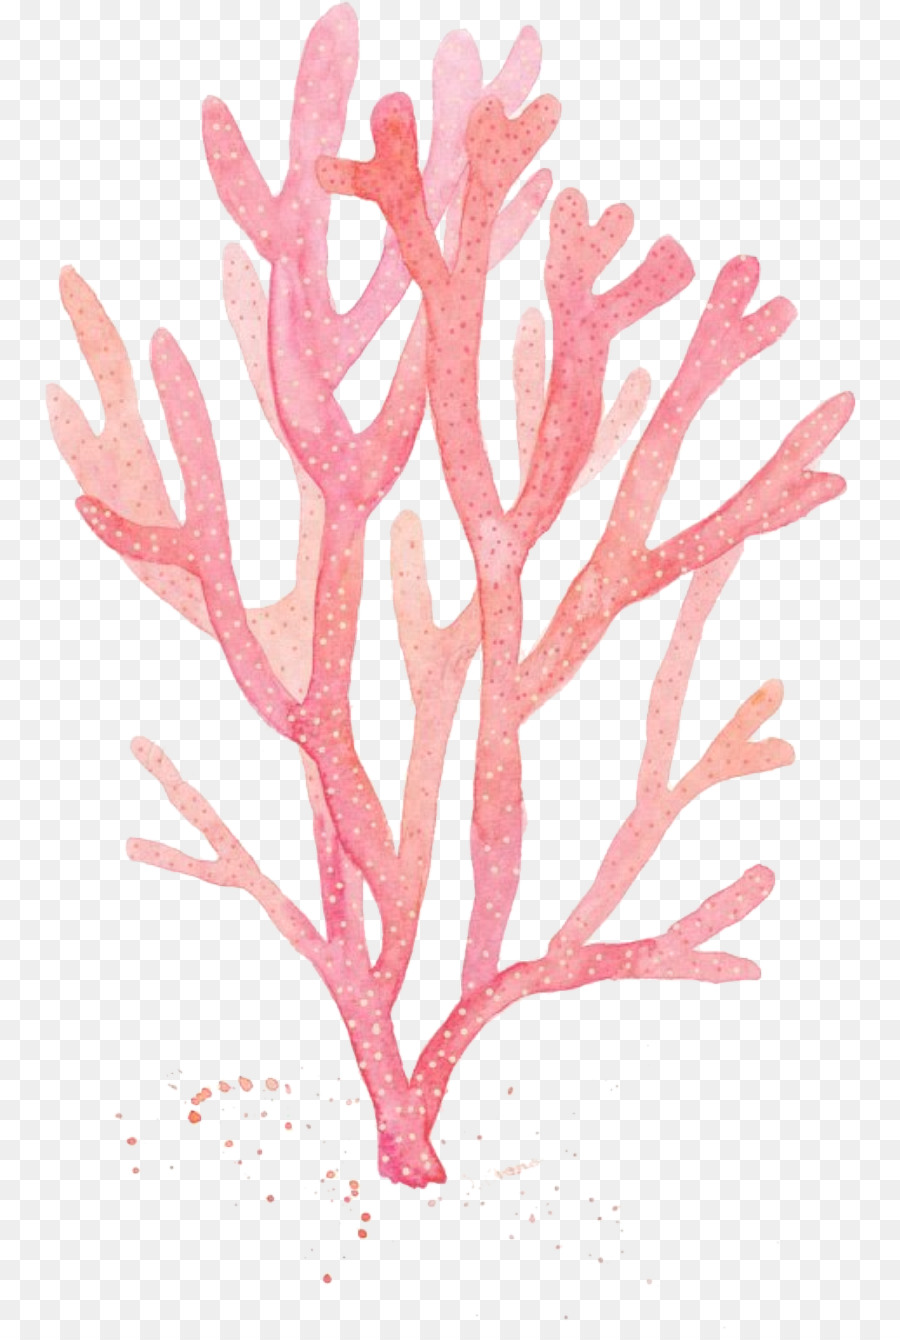 trang trí hồ cá màu hồng san hô rong biển - 